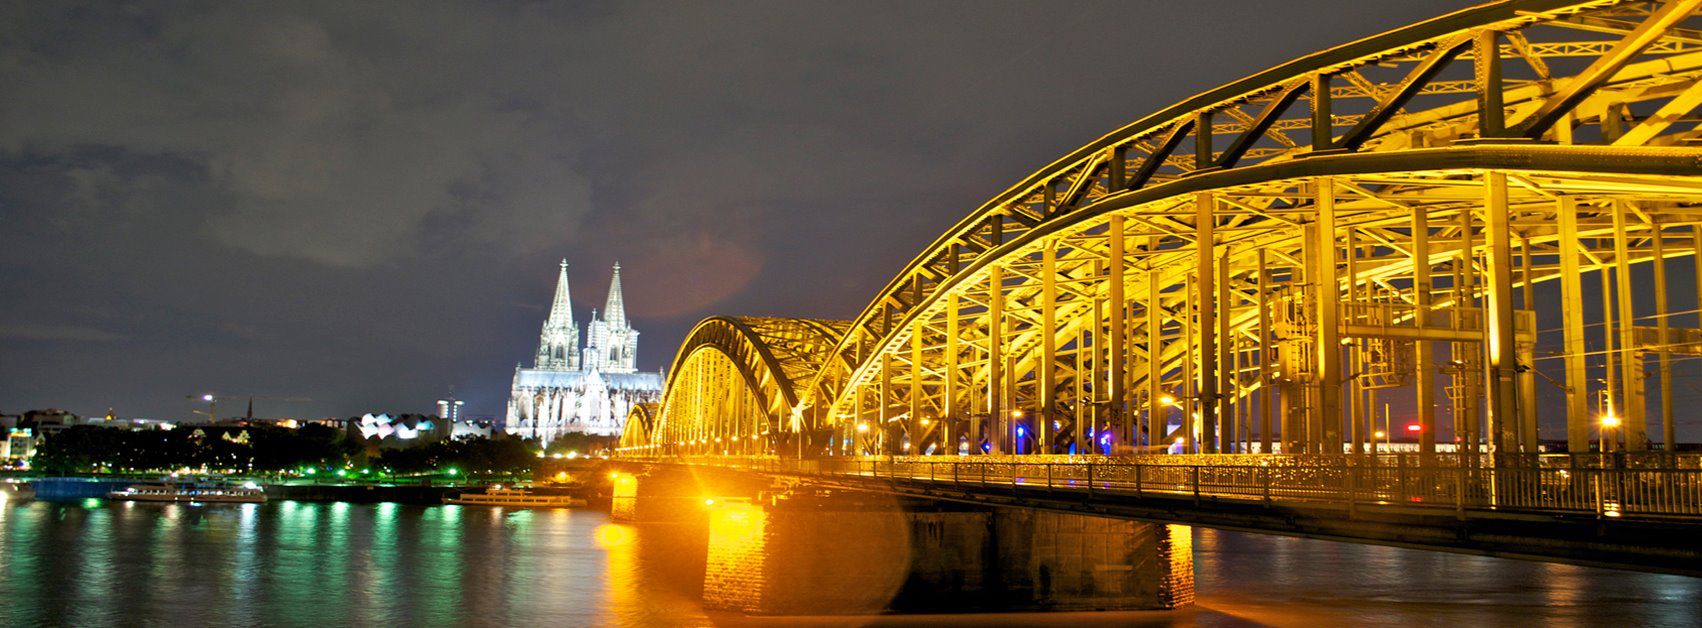 Kölner Dom und Brücke